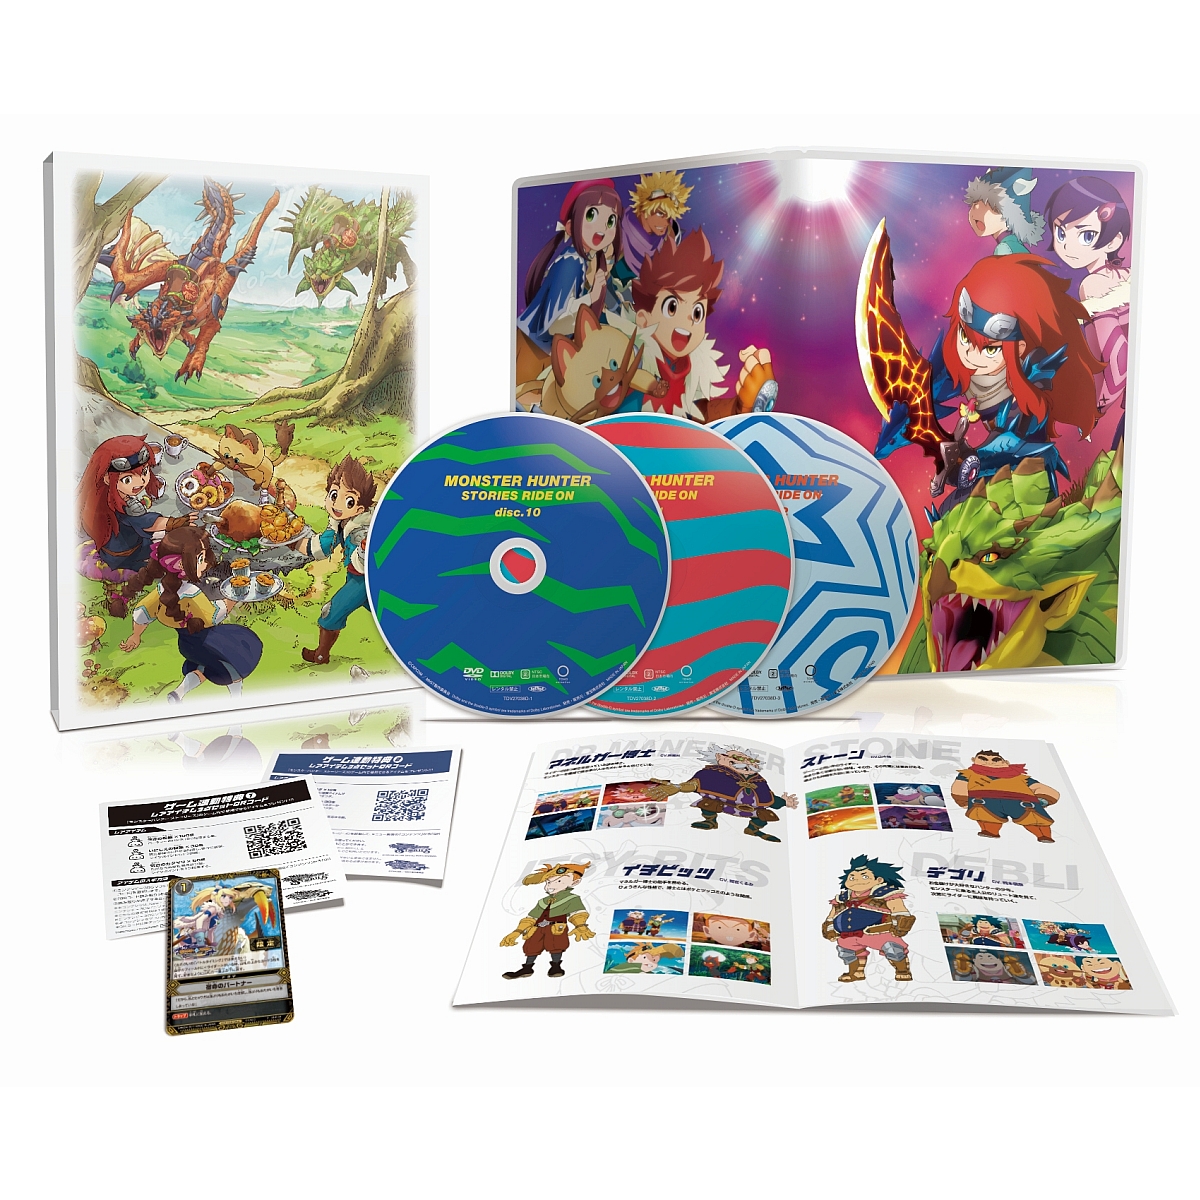 モンスターハンター ストーリーズ RIDE ON Blu-ray BOX Vol.4【Blu-ray】 [ 田村睦心 ]画像